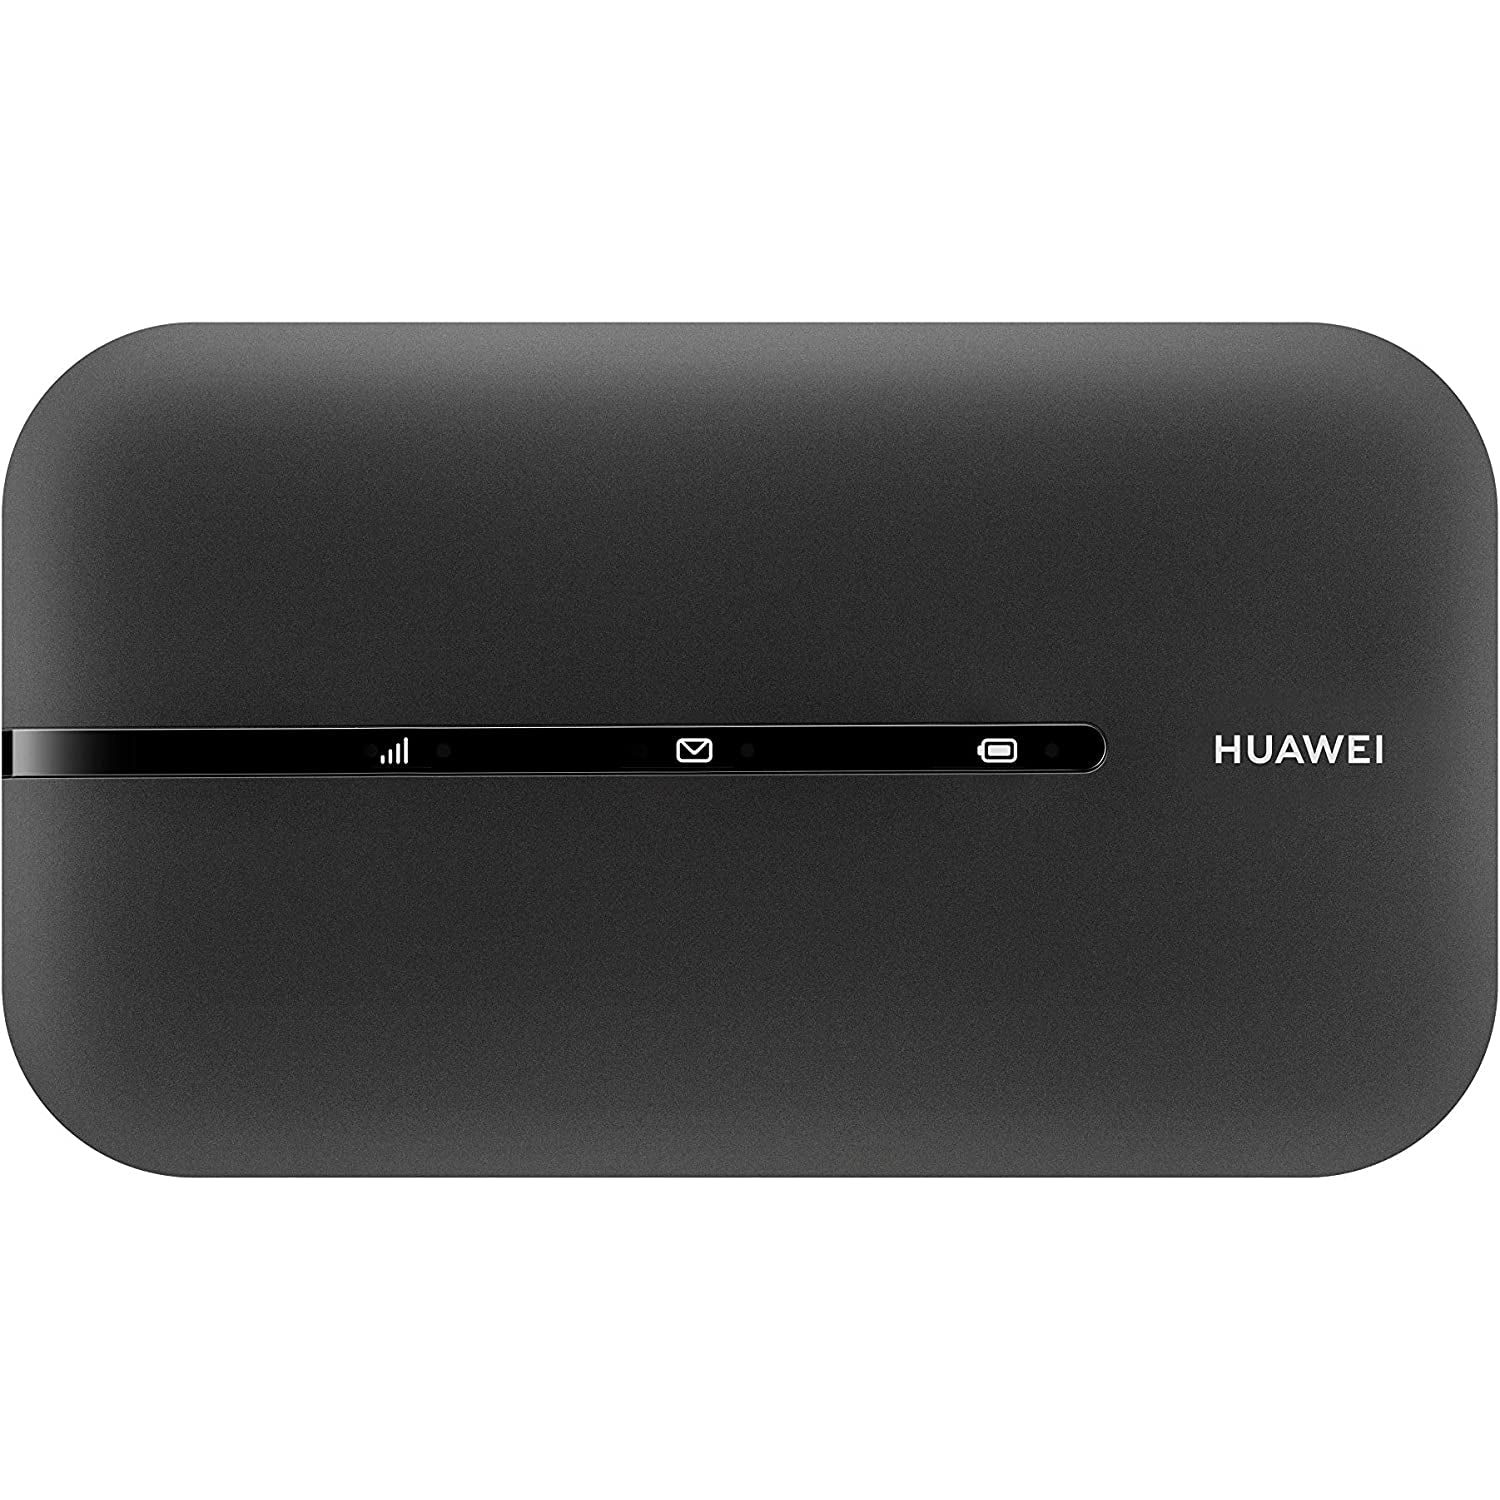 Huawei E5783B-230 4G LTE Wi-Fi Hotspot Modem - Refurbished Pristine